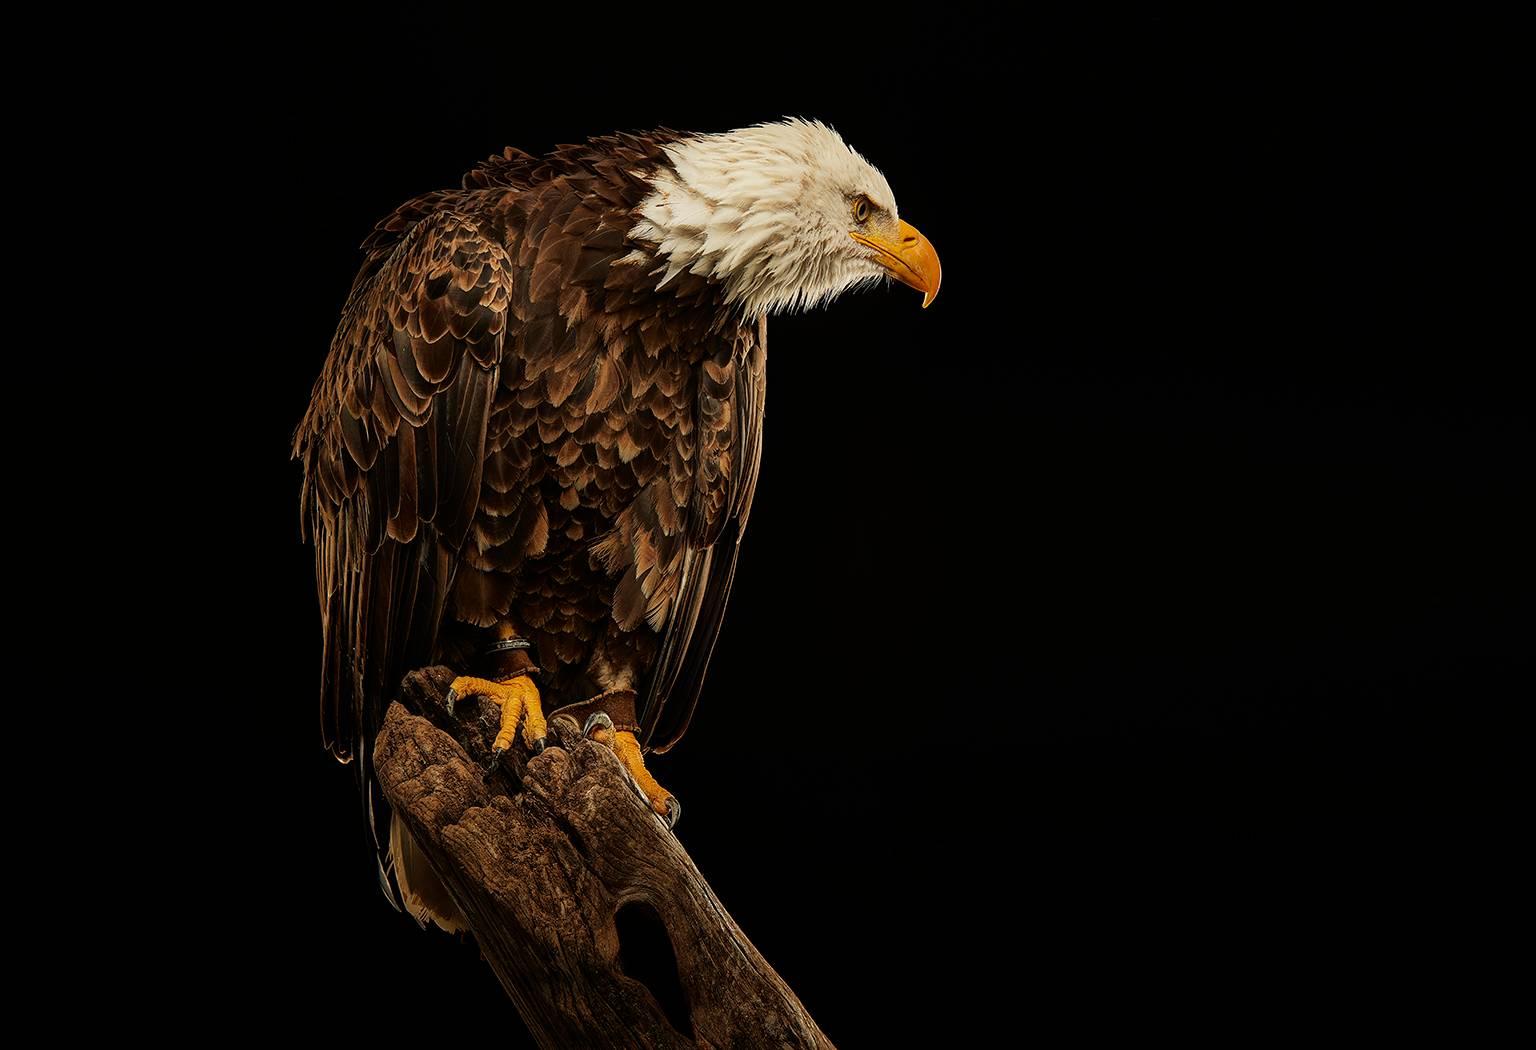 Chris Gordaneer Color Photograph - Birds of Prey Bald Eagle No. 17